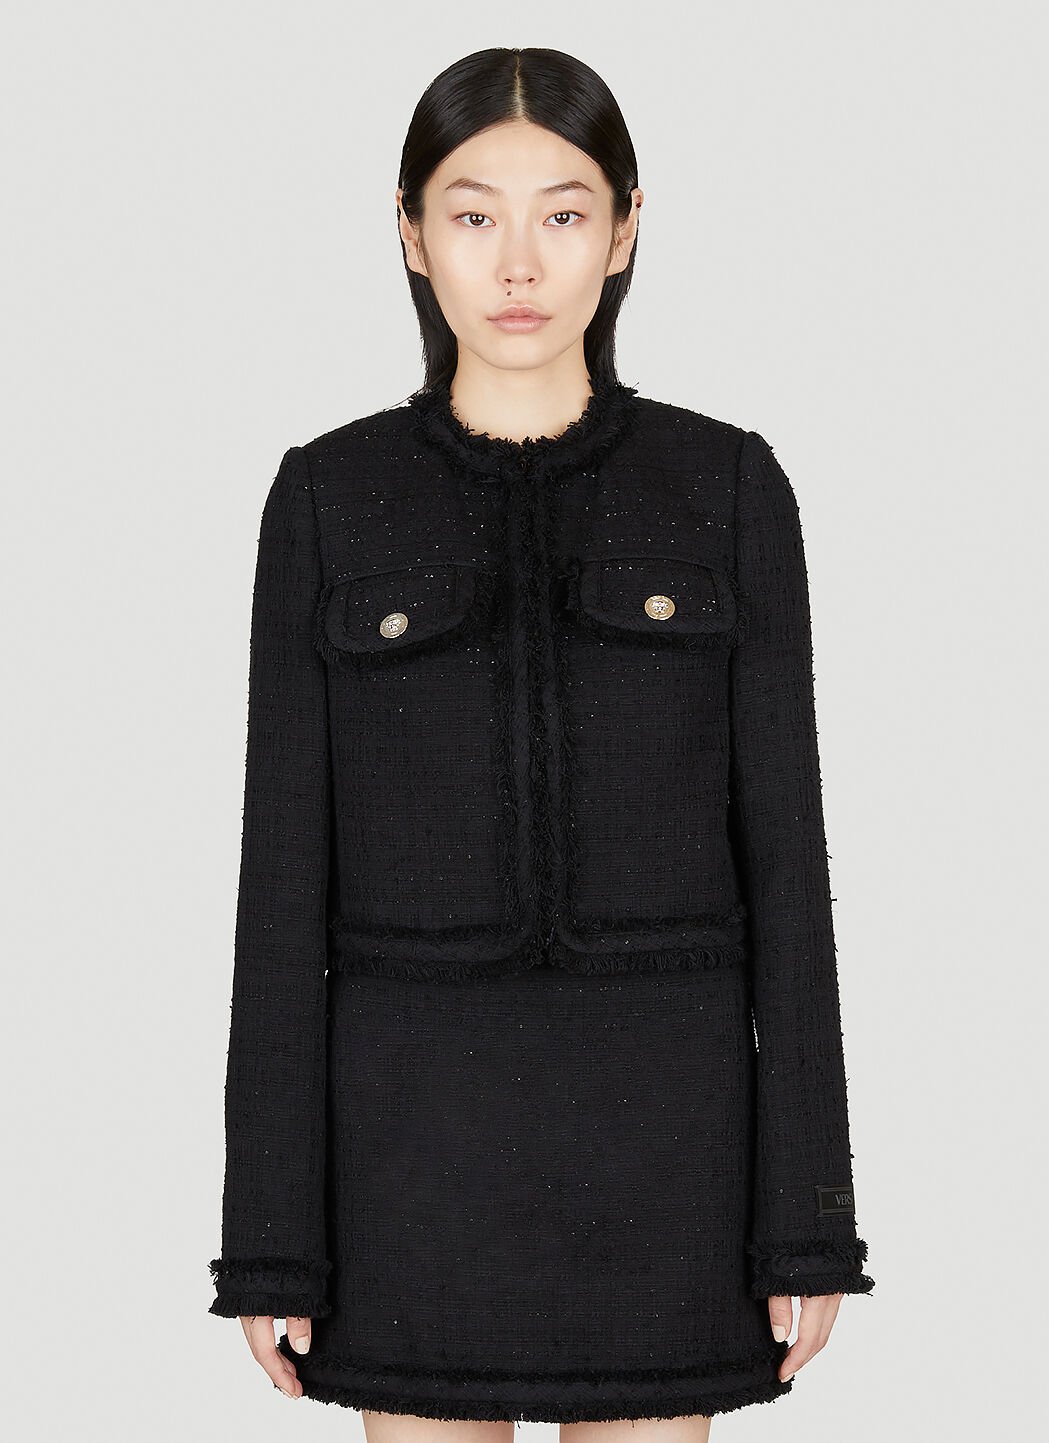 Versace Tweed Cardigan Jacket Black ver0251025